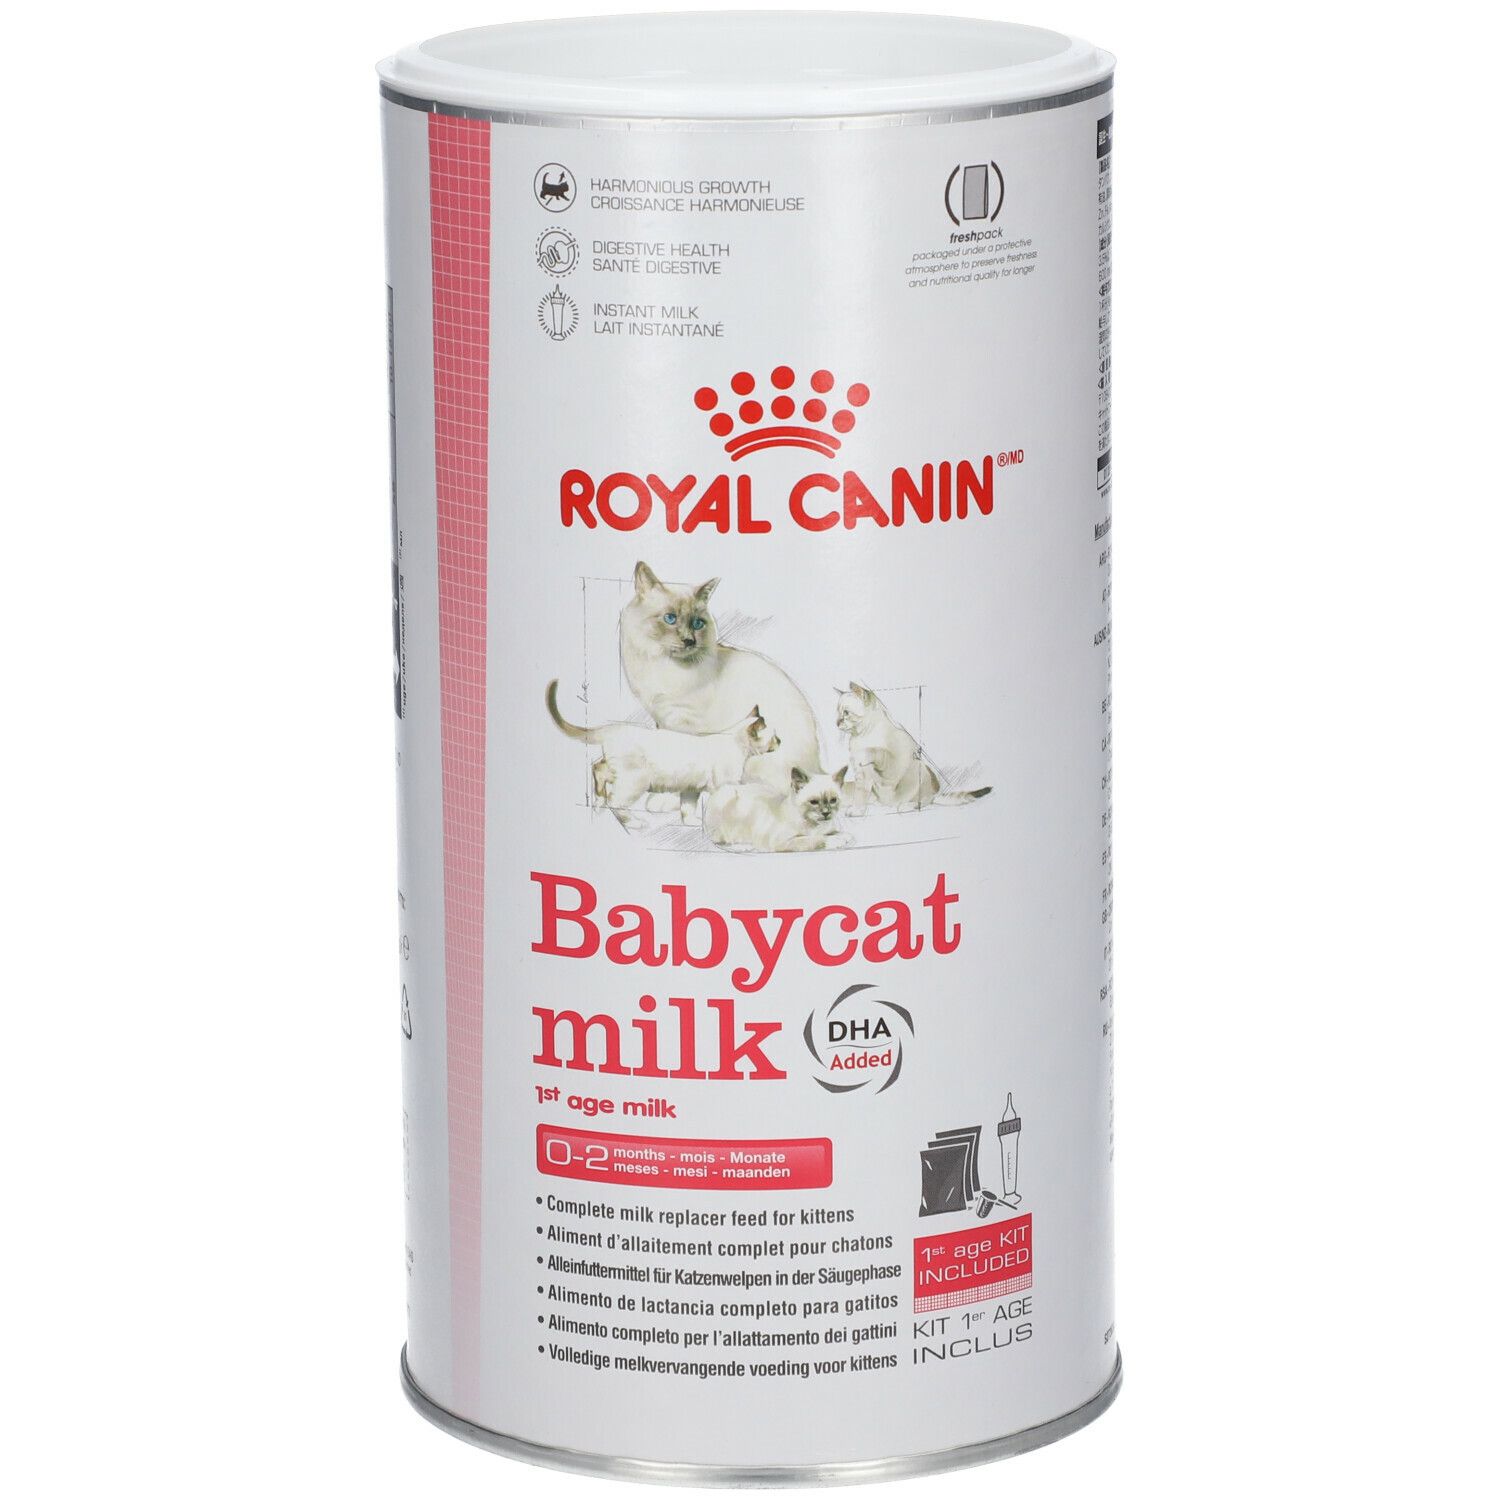 ROYAL CANIN® Babycat Milk - Lait pour chaton 300 g lait